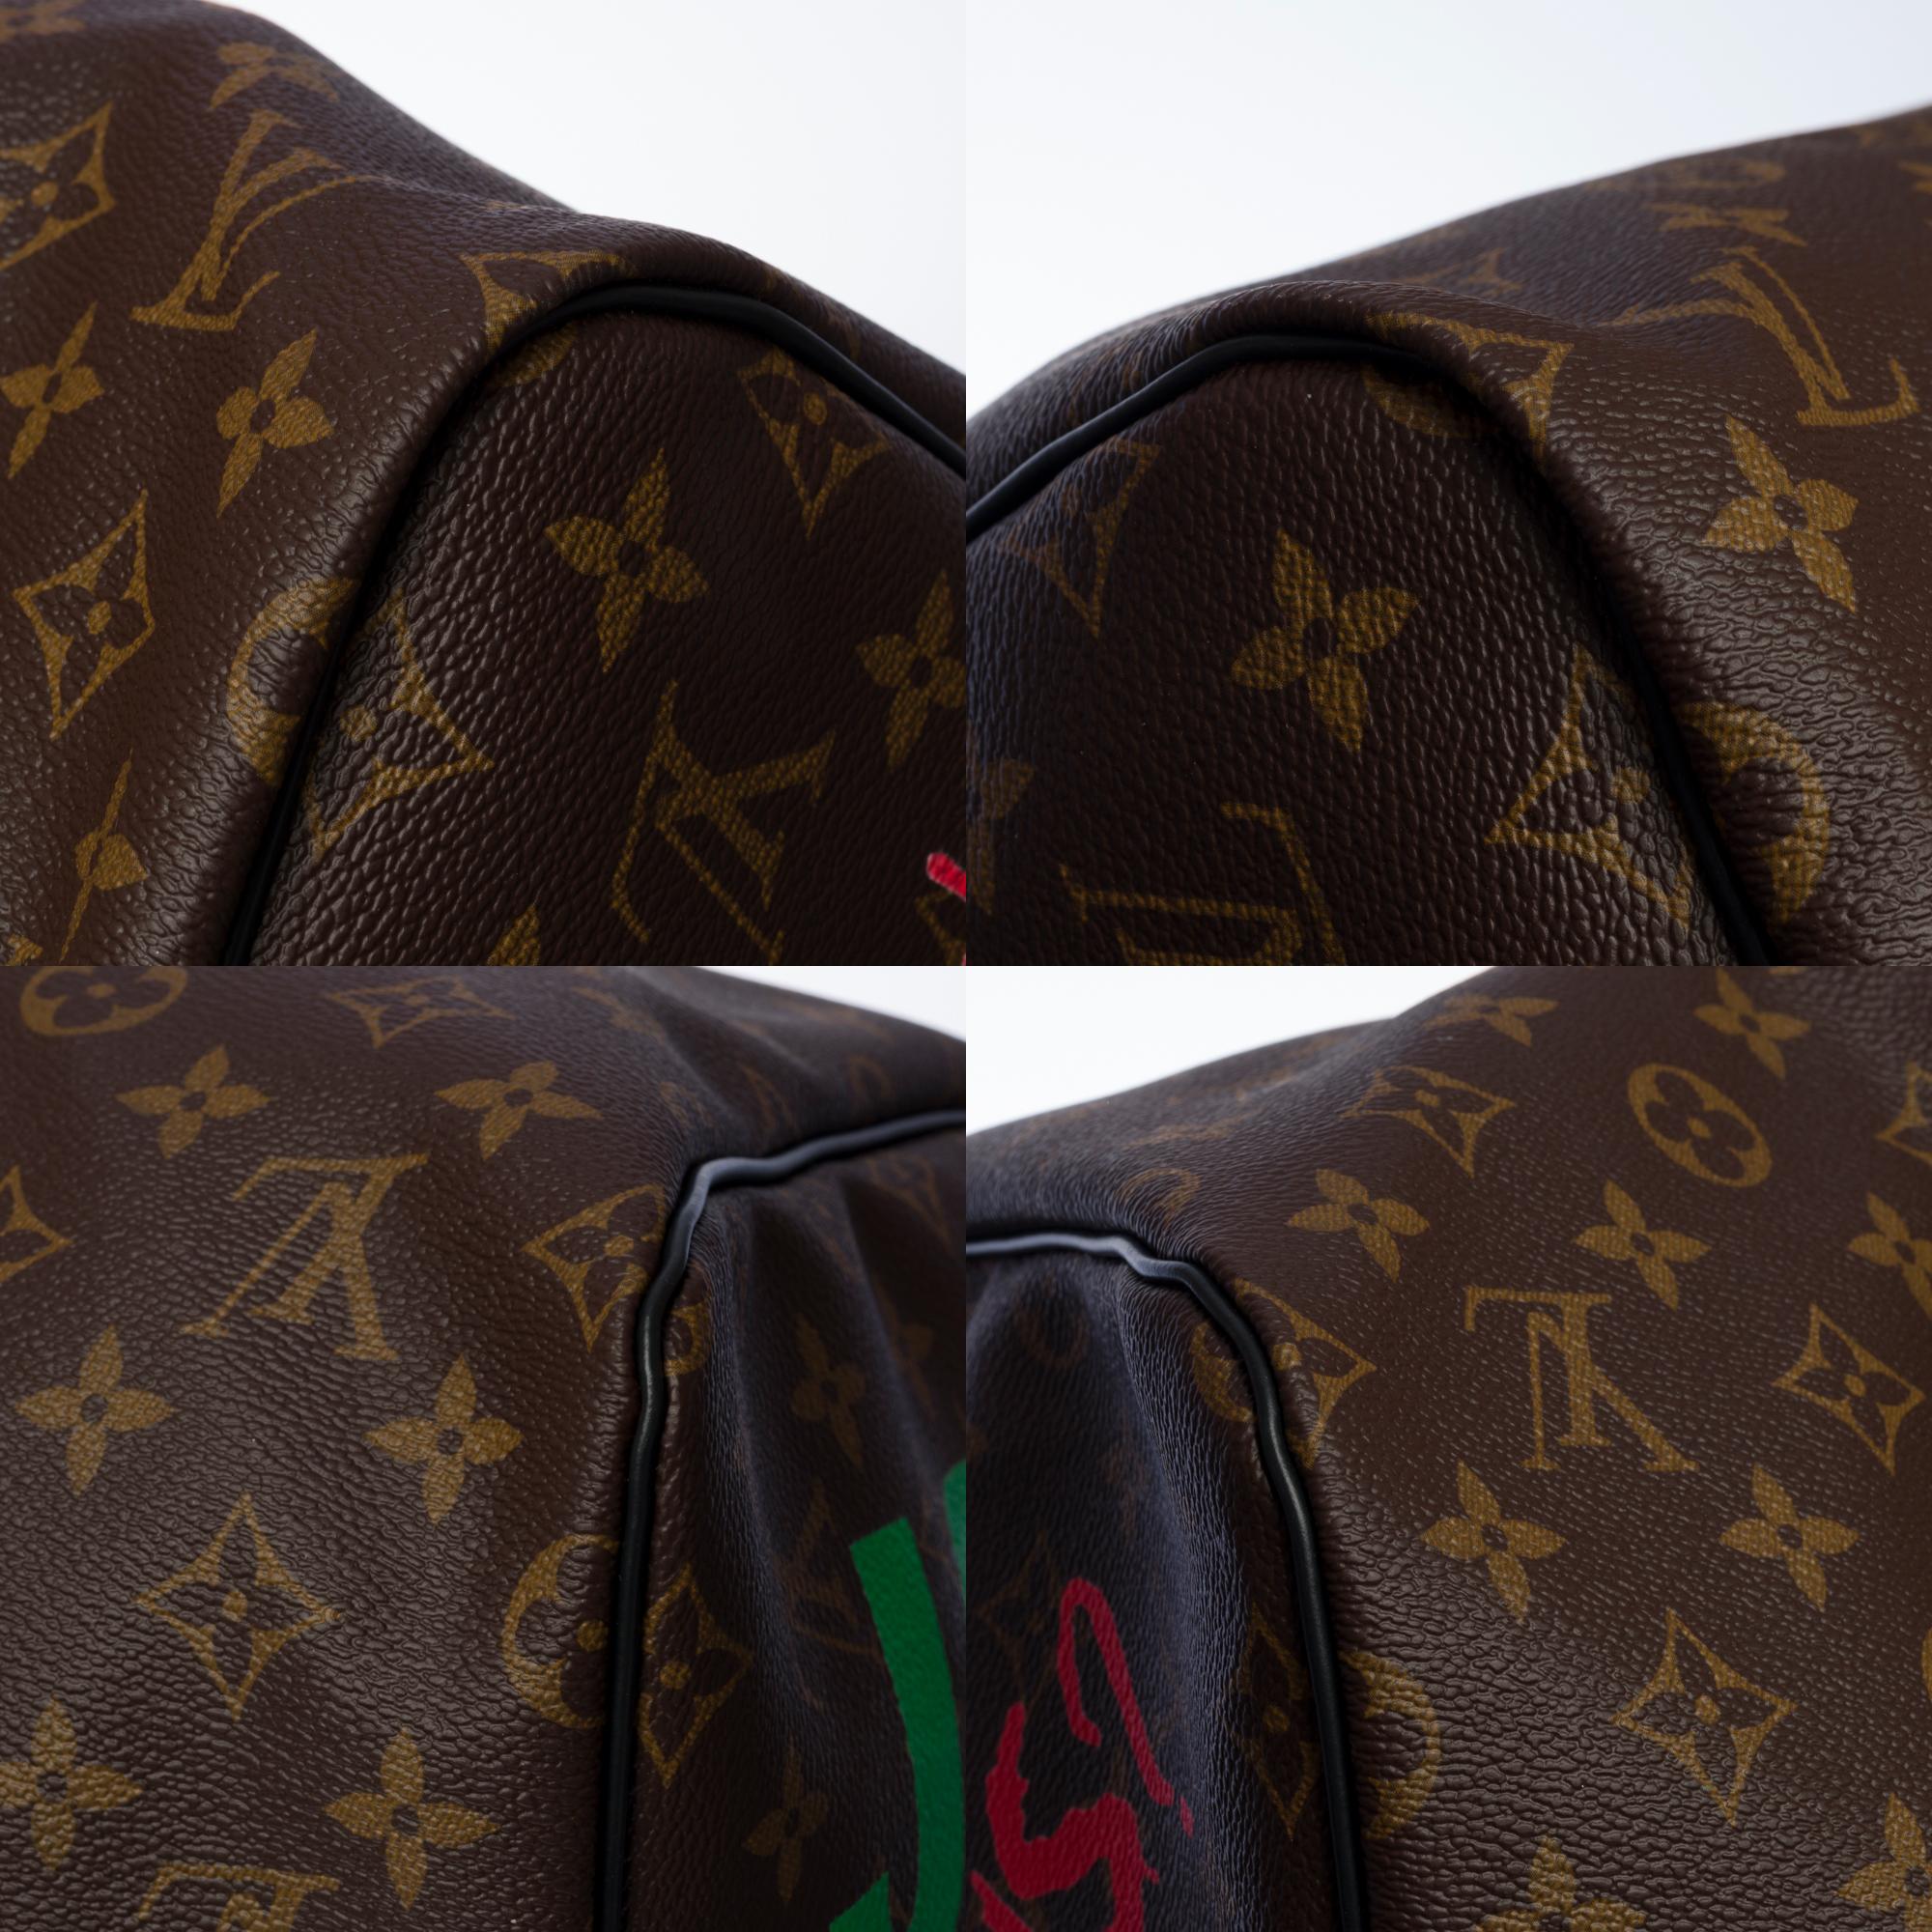 New Customized Louis Vuitton Keepall 55 Macassar strap 